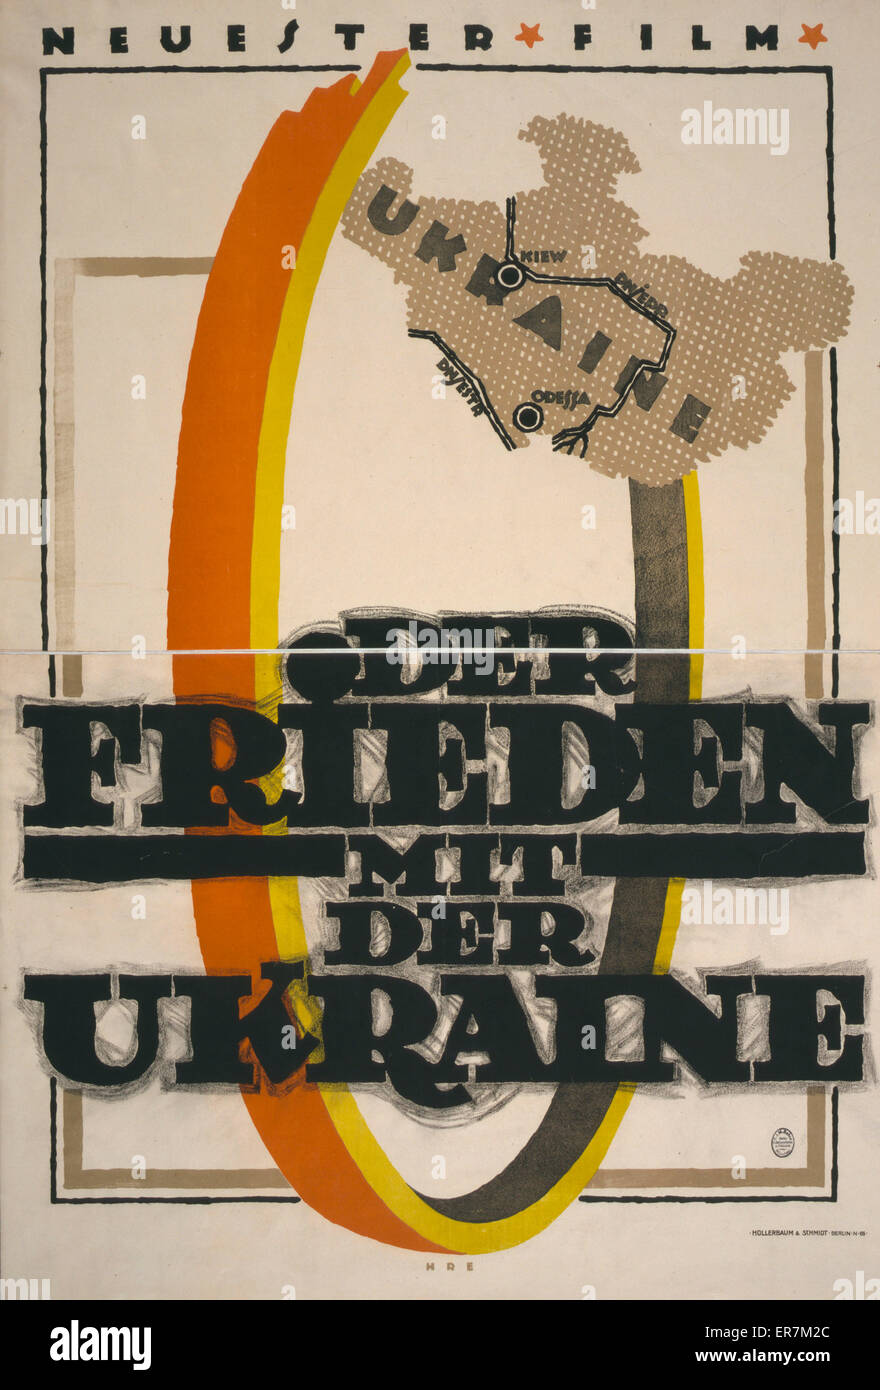 Der Frieden mit der ucraina. Neuester Film. Poster mostra una mappa stilizzata di Ucraina e parte di un grande anello(?). Il testo è il titolo del film. Data 1918. Foto Stock